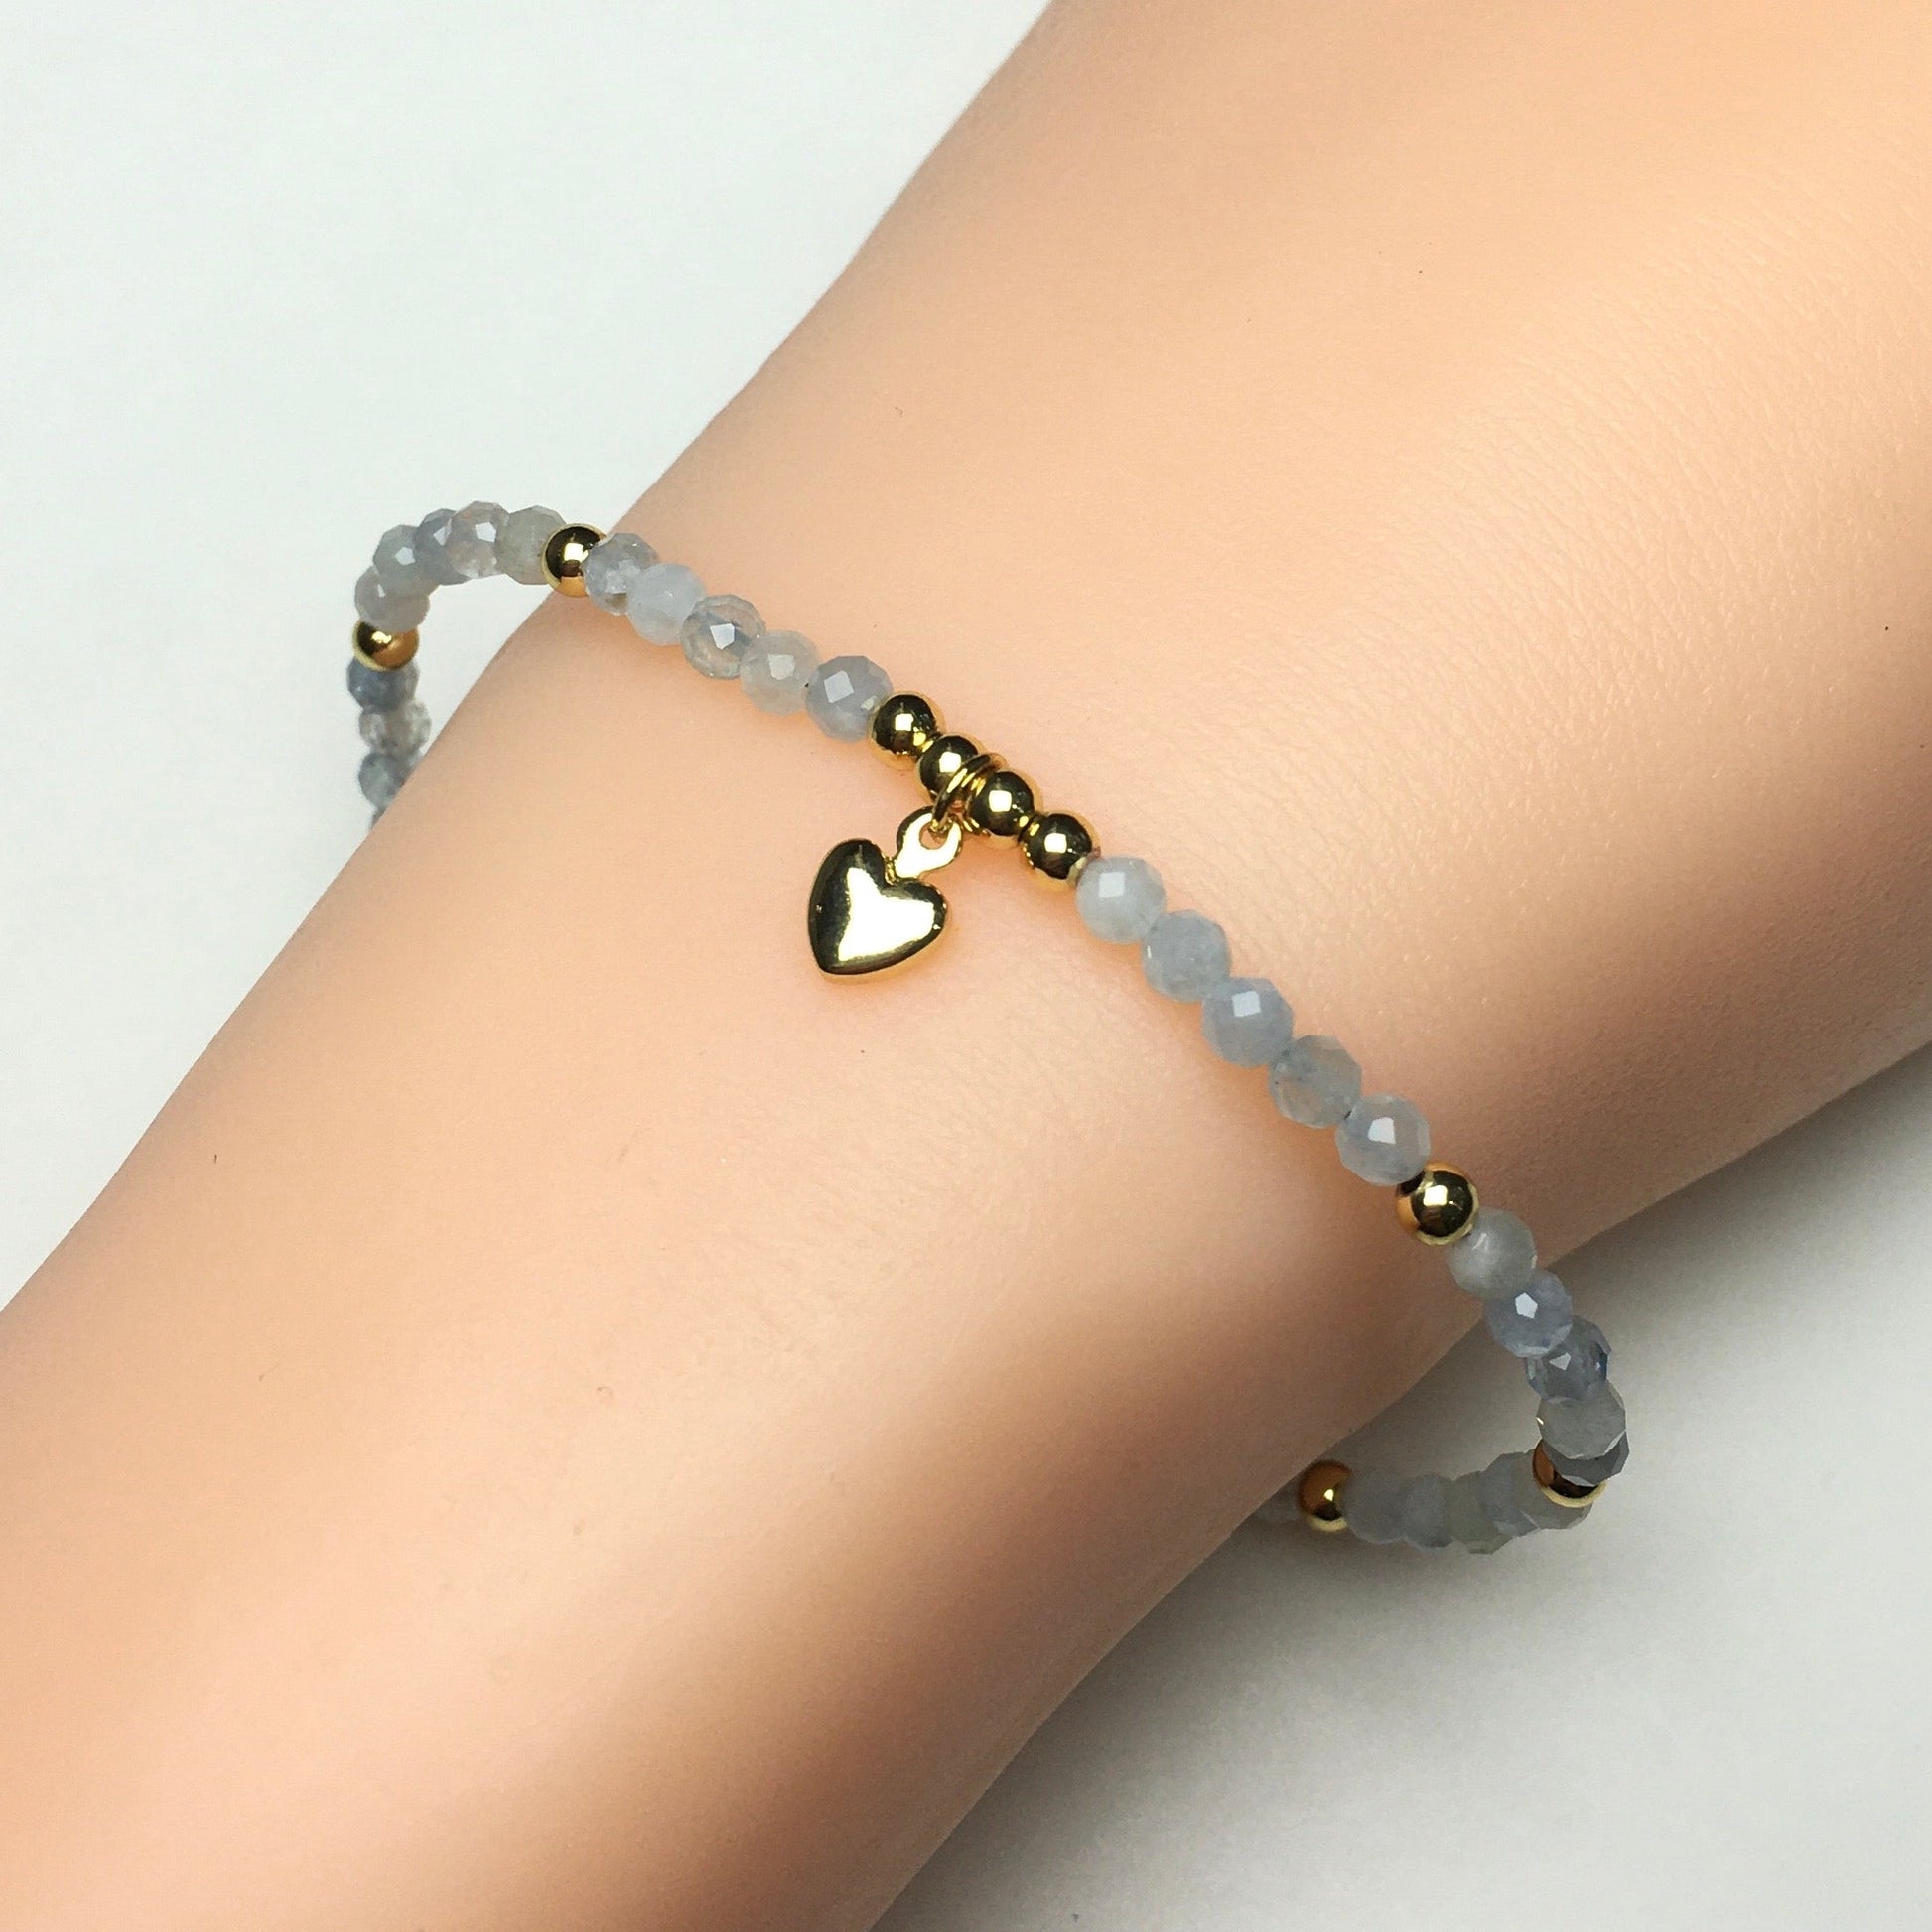 Aquamarine Gemstone Braid Rope Macrame Adjustable Bracelet Tiny Beads Gemstone Bracelet with Love Heart Charm